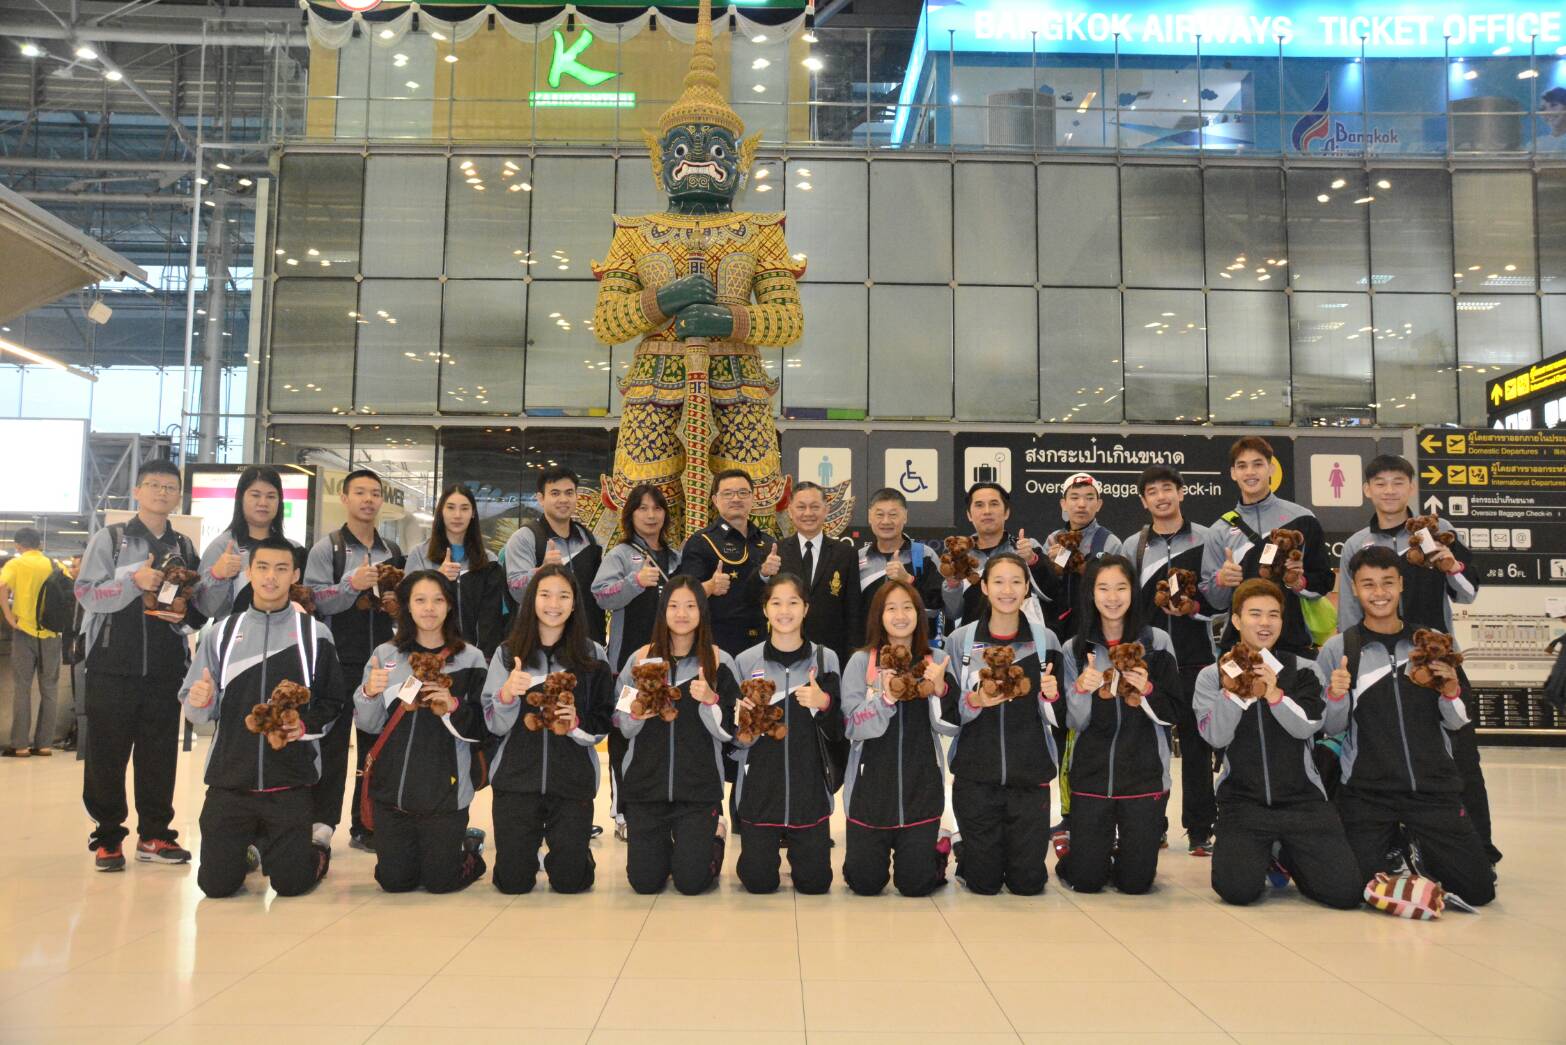 “ทัพแบดมินตันเยาวชนไทย ชุดชิงแชมป์เอเชีย 2017 เดินทางไปอินโดนีเซีย วันนี้”